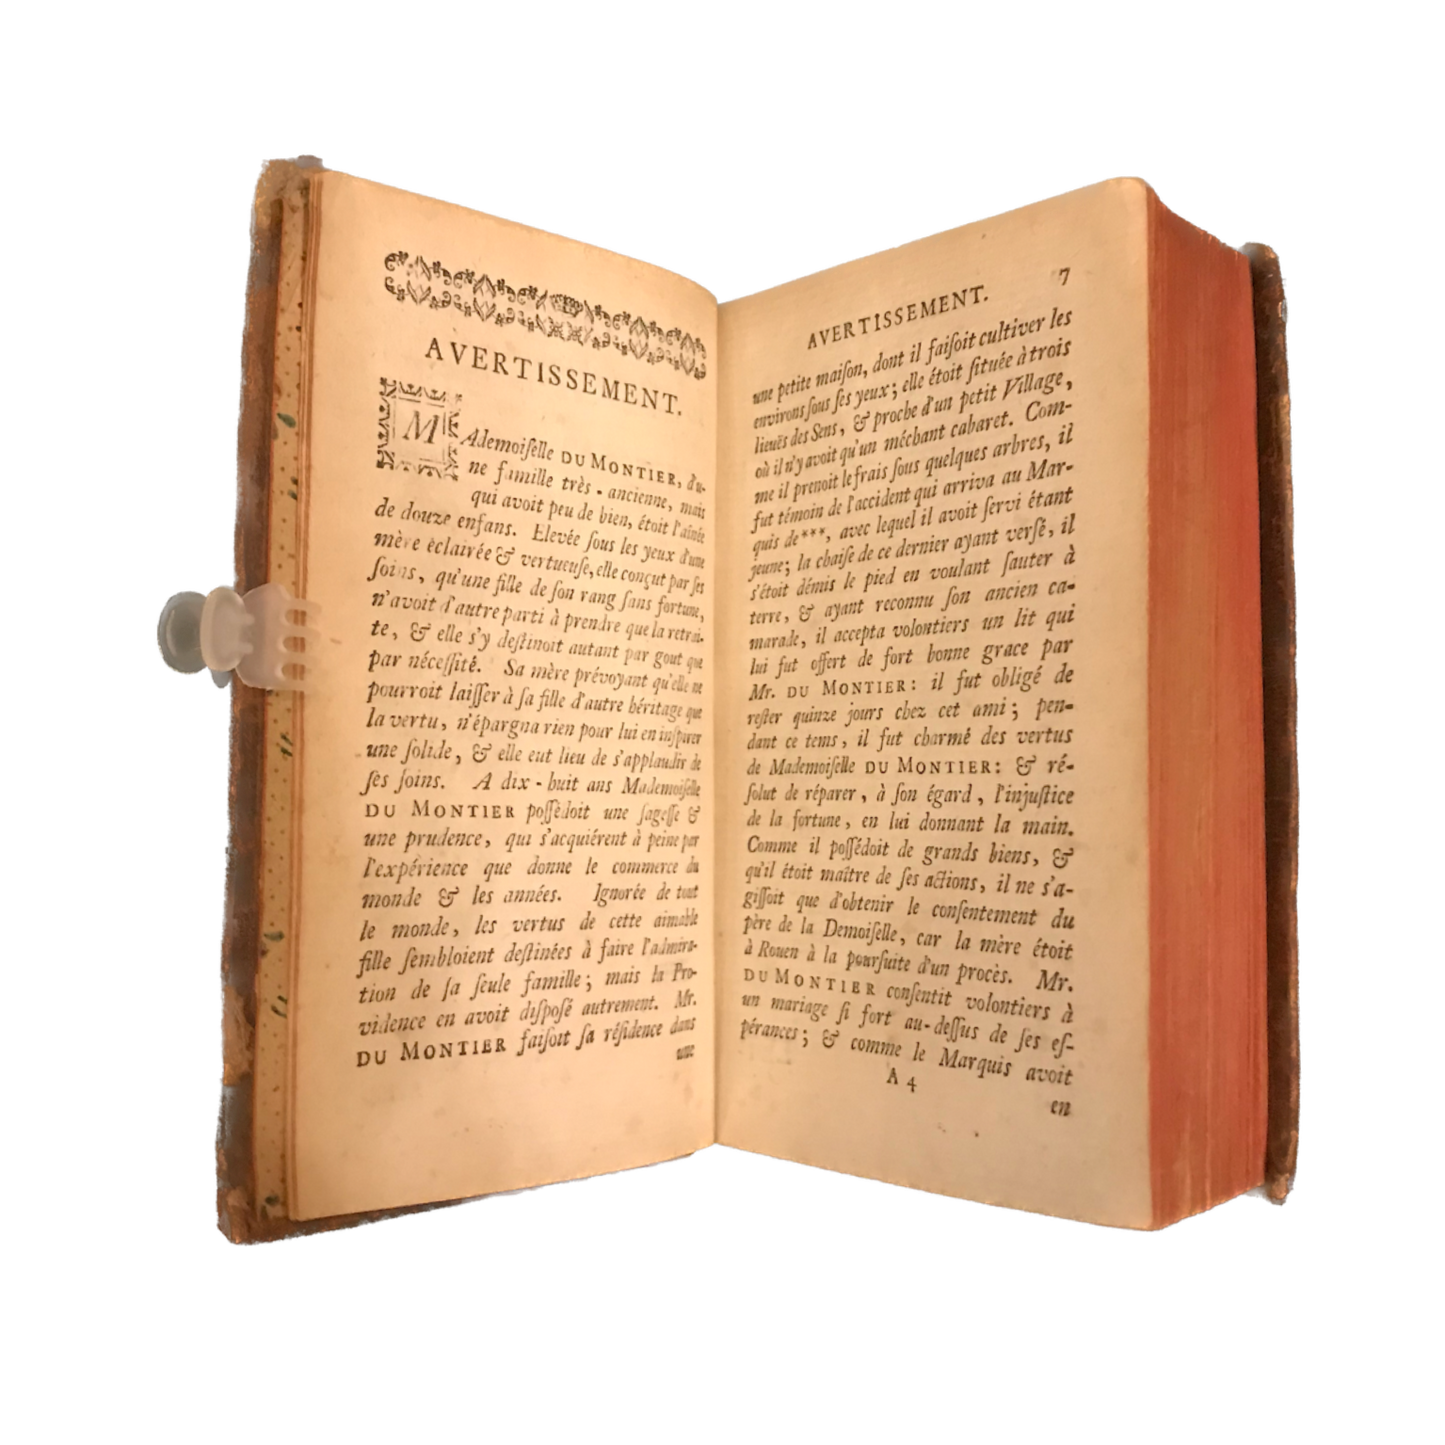 1767 - Le prince de Beaumont - Lettres de madame Du Montier - Rare E.O